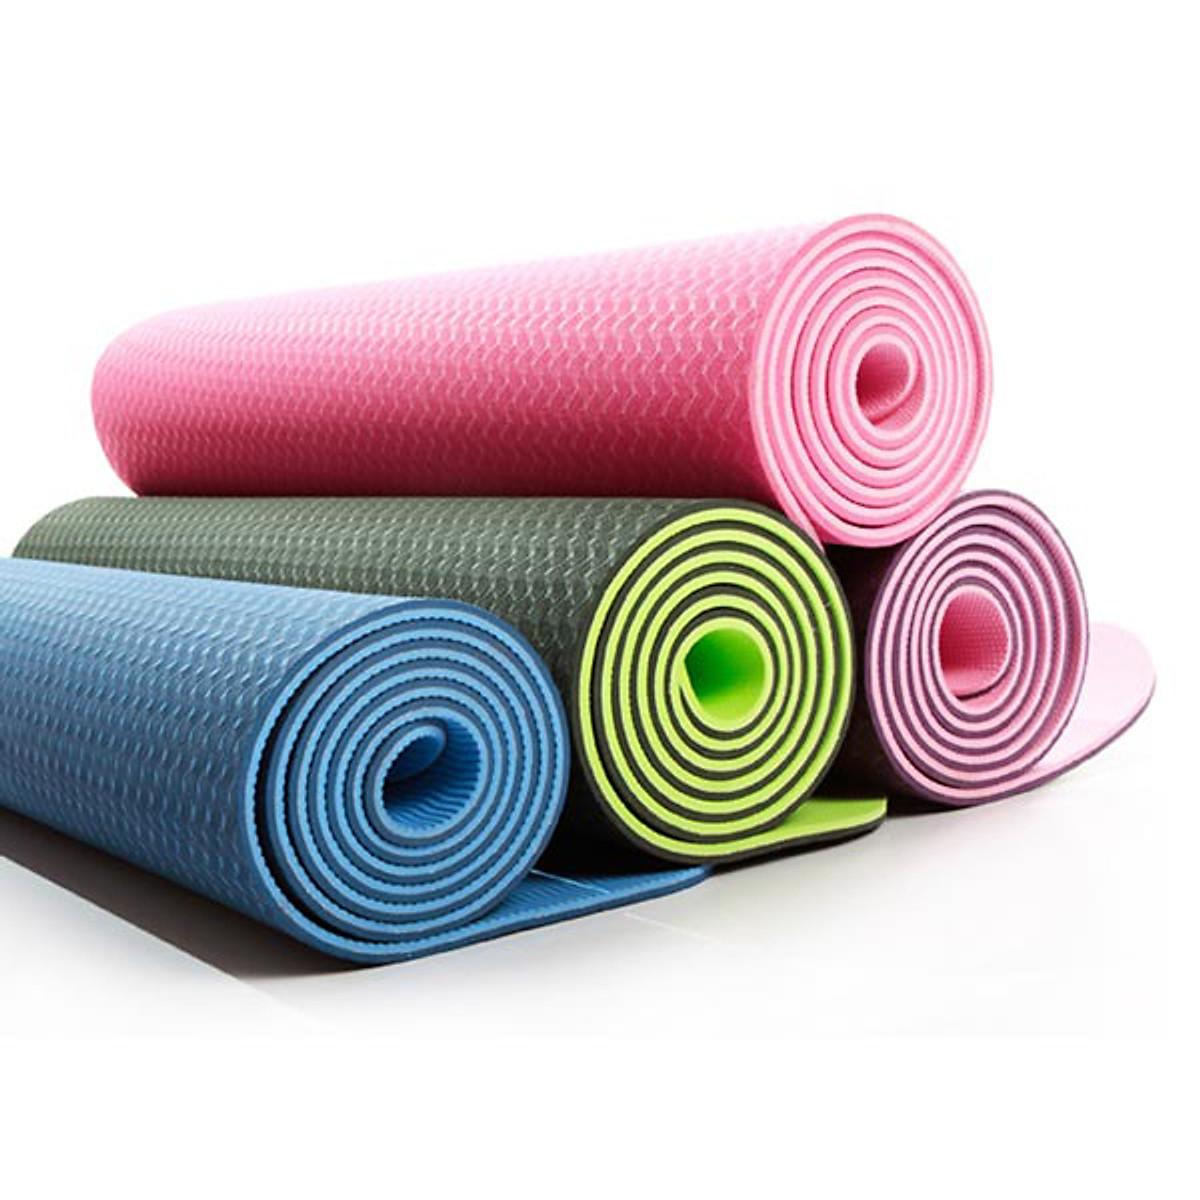 Thảm Yoga 2 Mặt Cao Cấp (173cm x 61cm x 6mm) tặng kem 1 khăn gội đầu hàn quốc ( giao màu ngẫu nhiên )